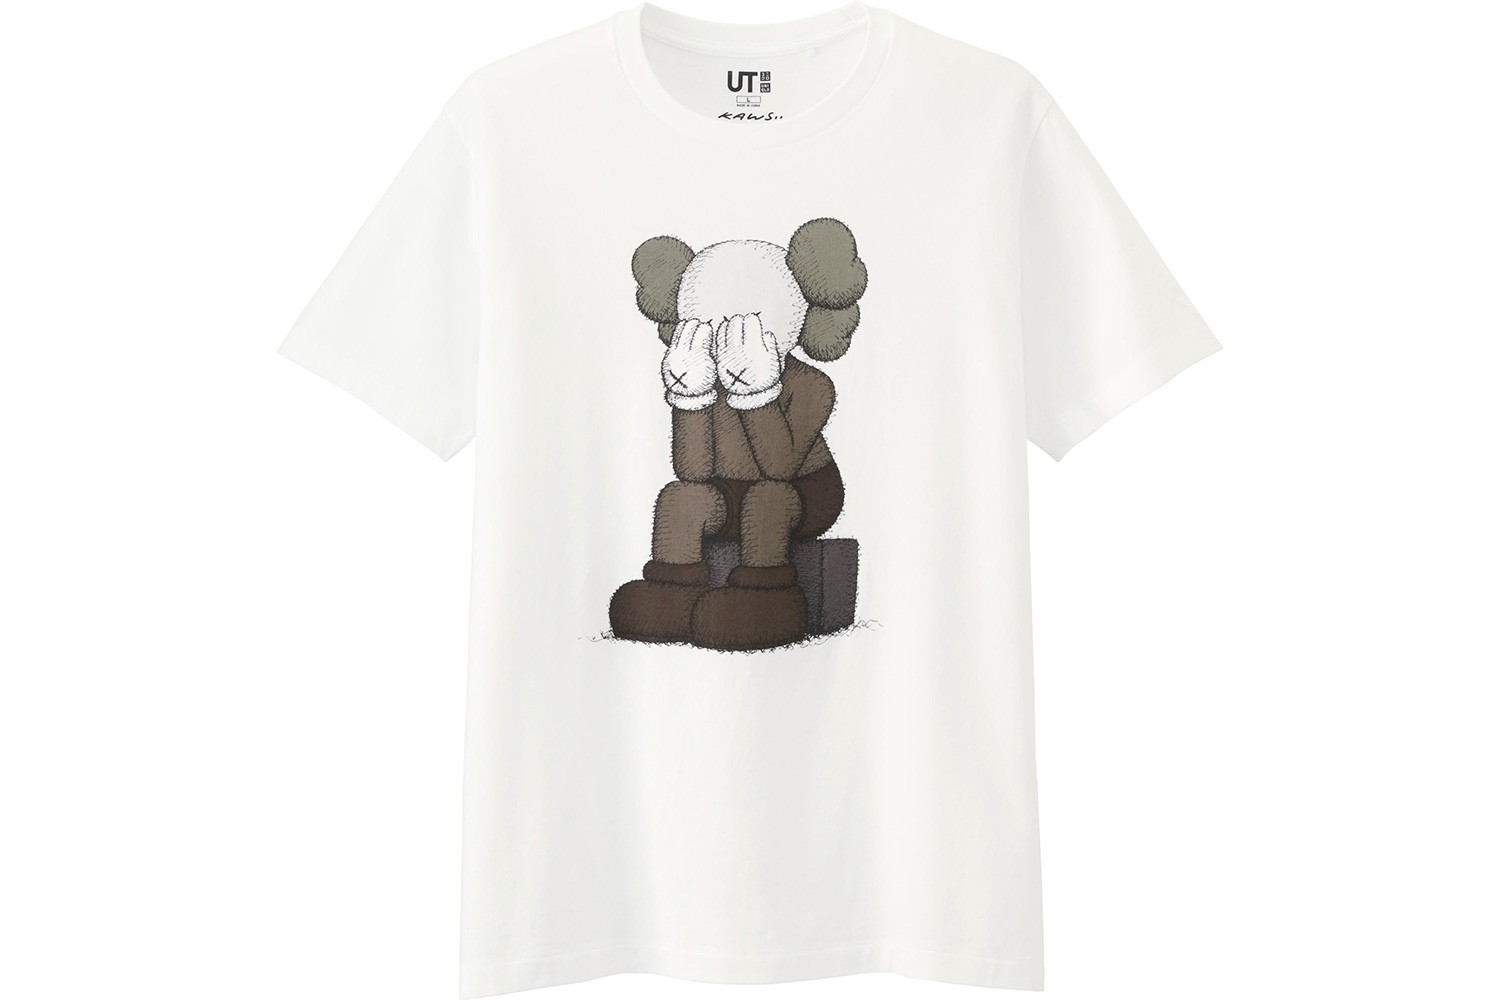 Get Buy KAWS x Uniqlo Flayed TShirt  Theaffordableshirtcom  Shirts  Affordable shirts T shirt